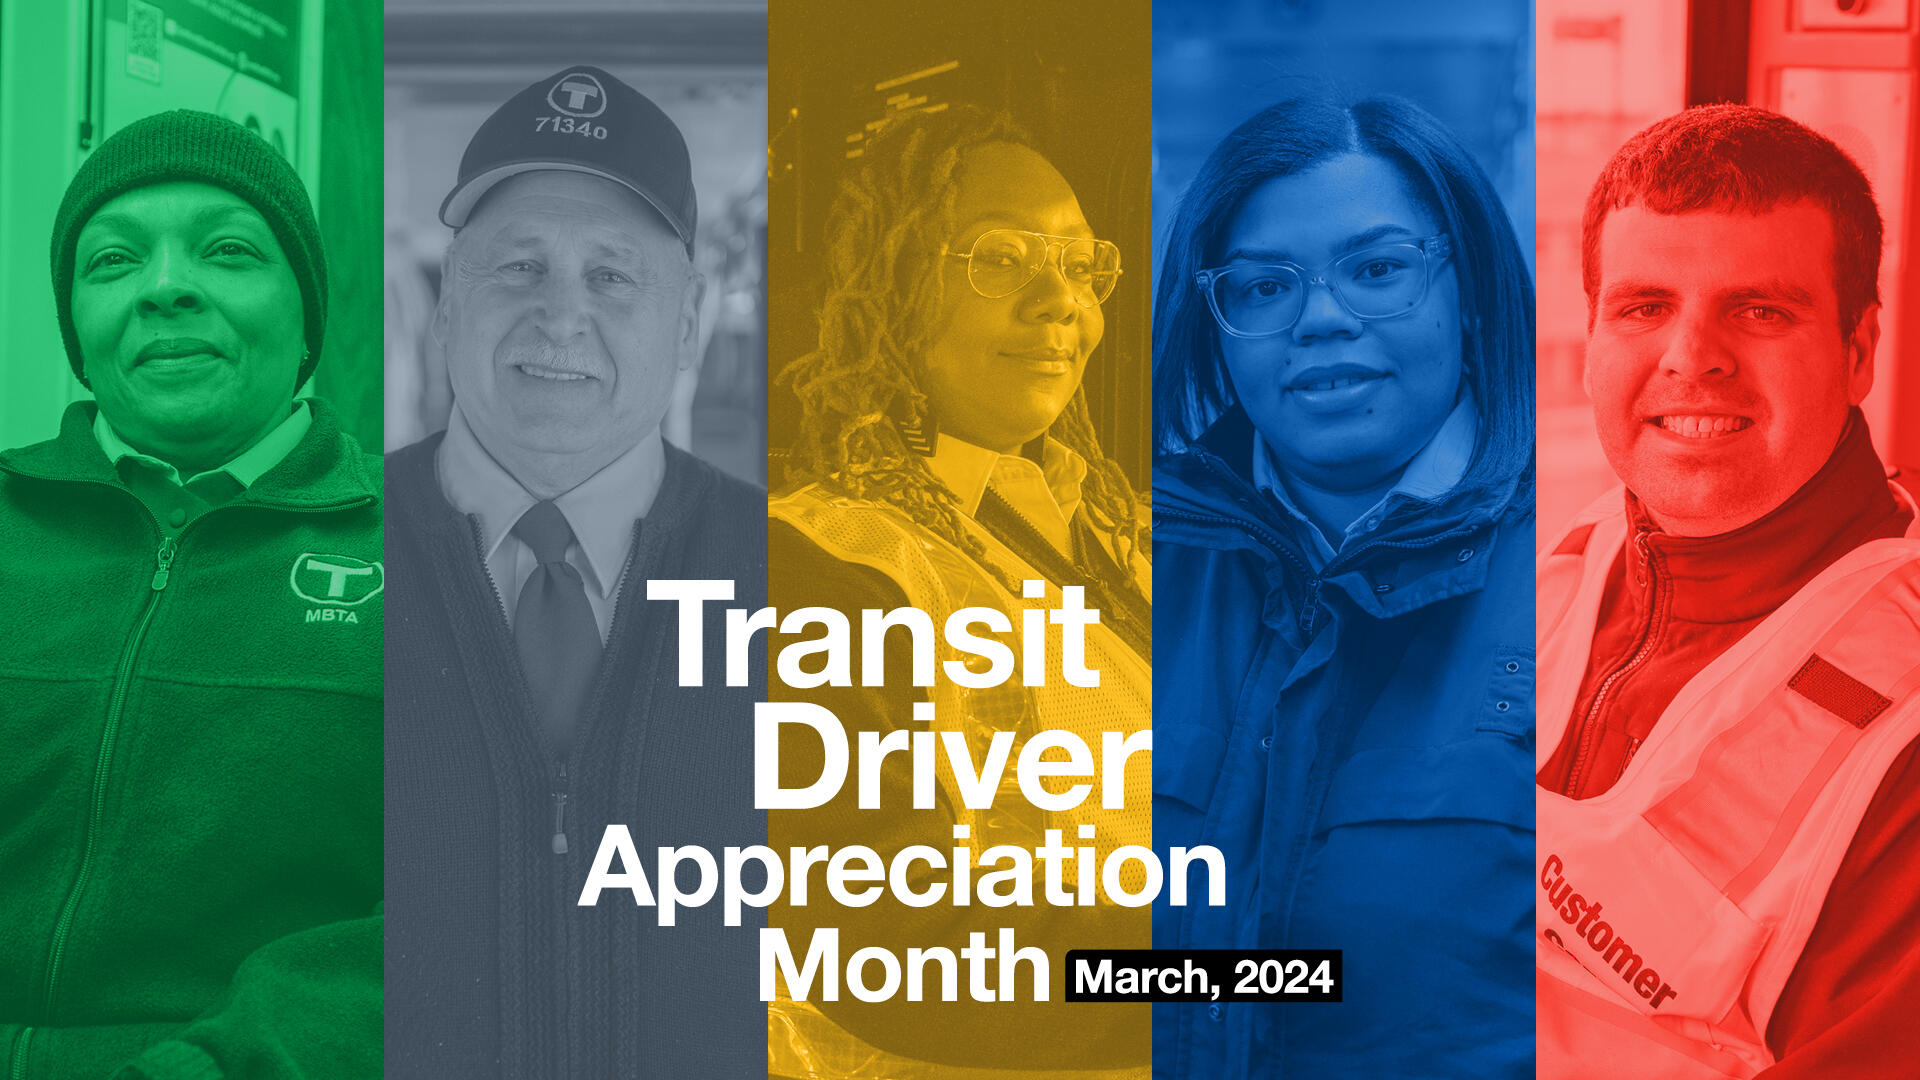 Five MBTA transit employees